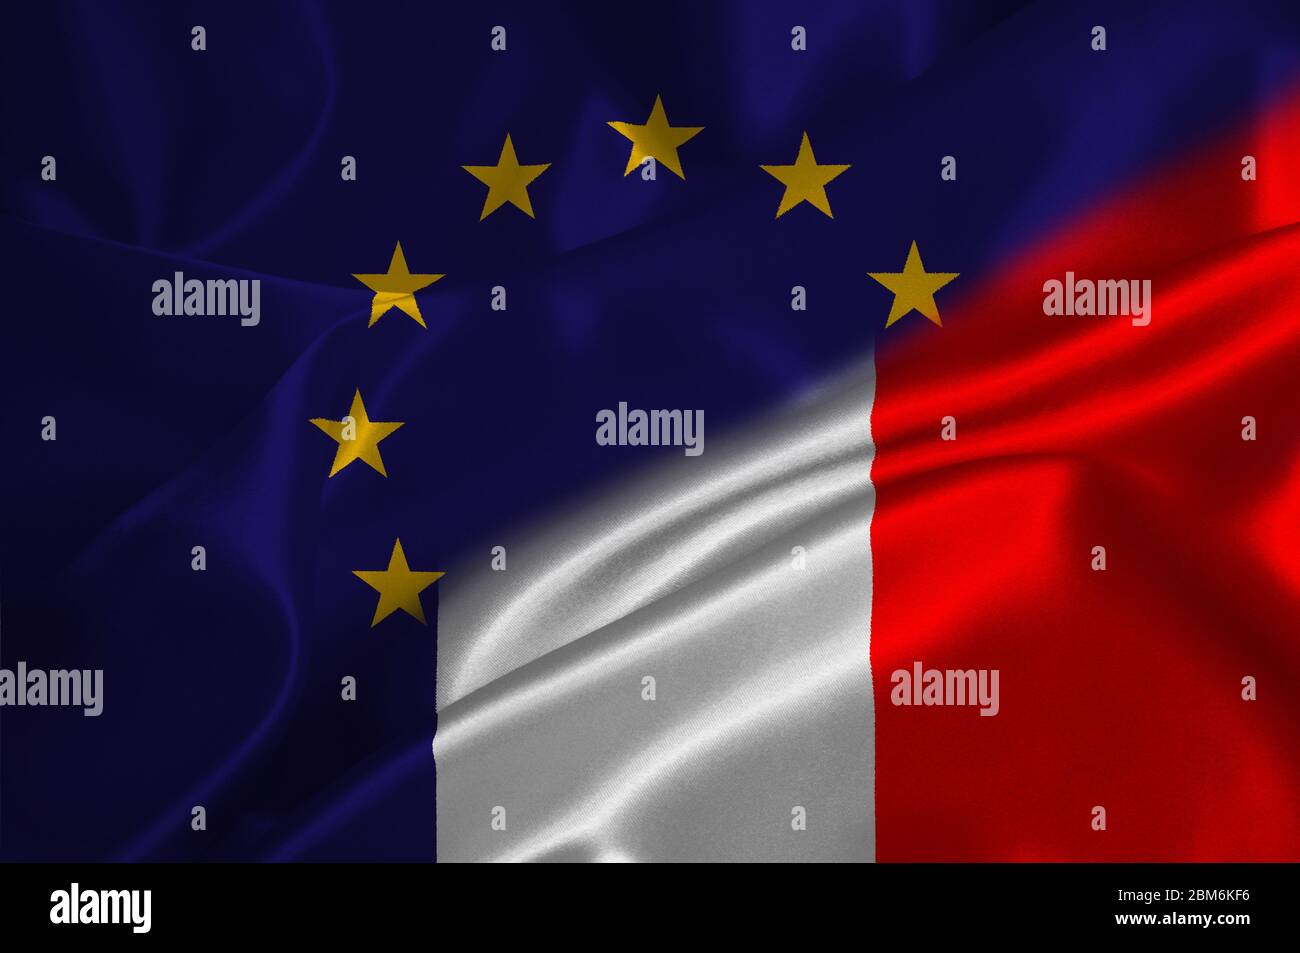 EU flag and France flag on satin texture. Stock Photo